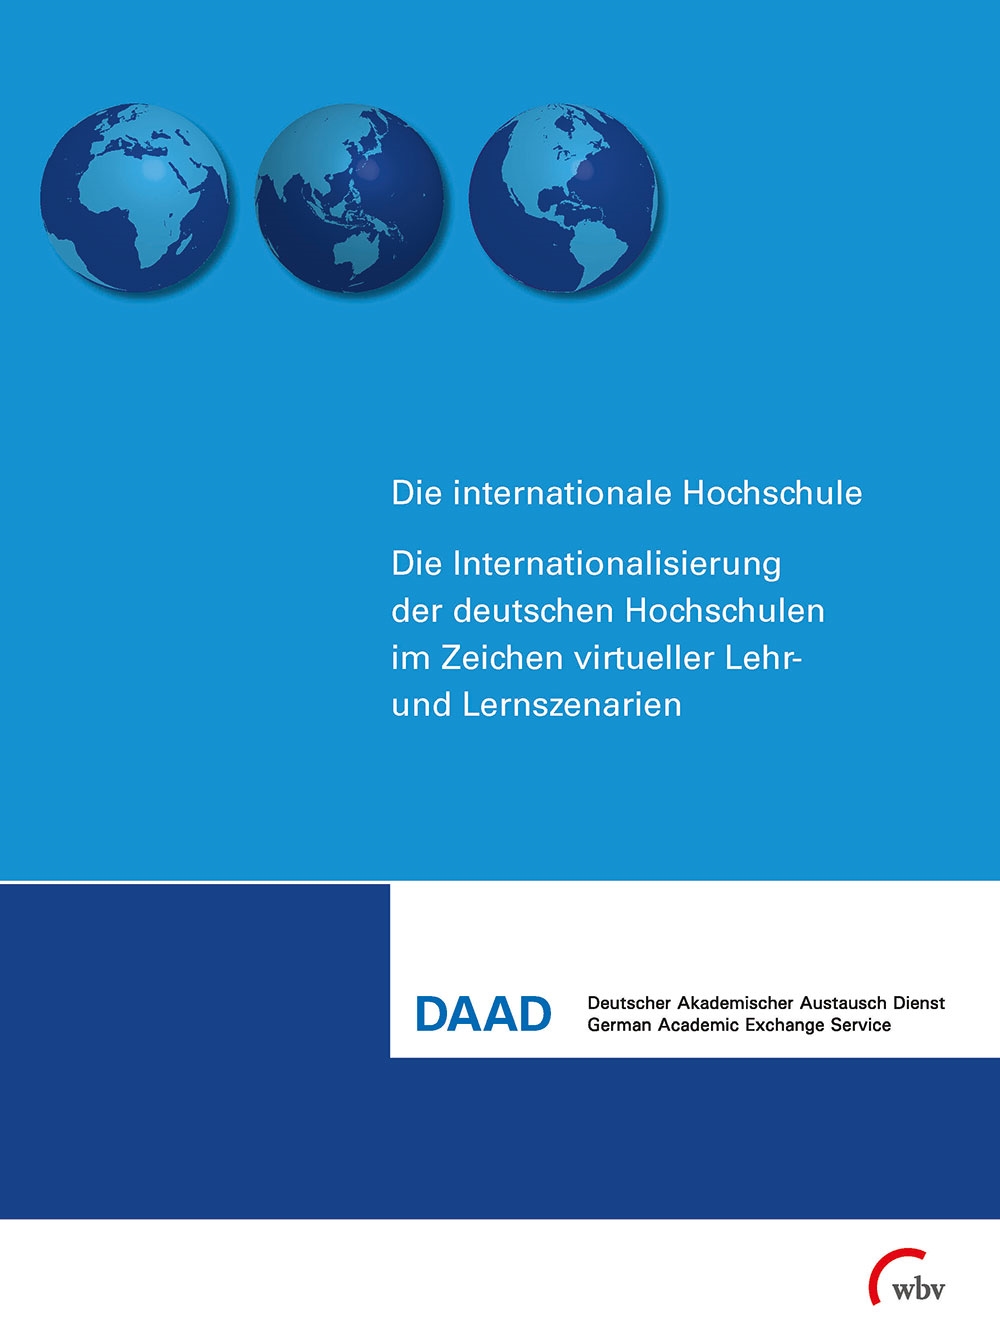 Die Internationalisierung der deutschen Hochschule im Zeichen virtueller Lehr- und Lernszenarien